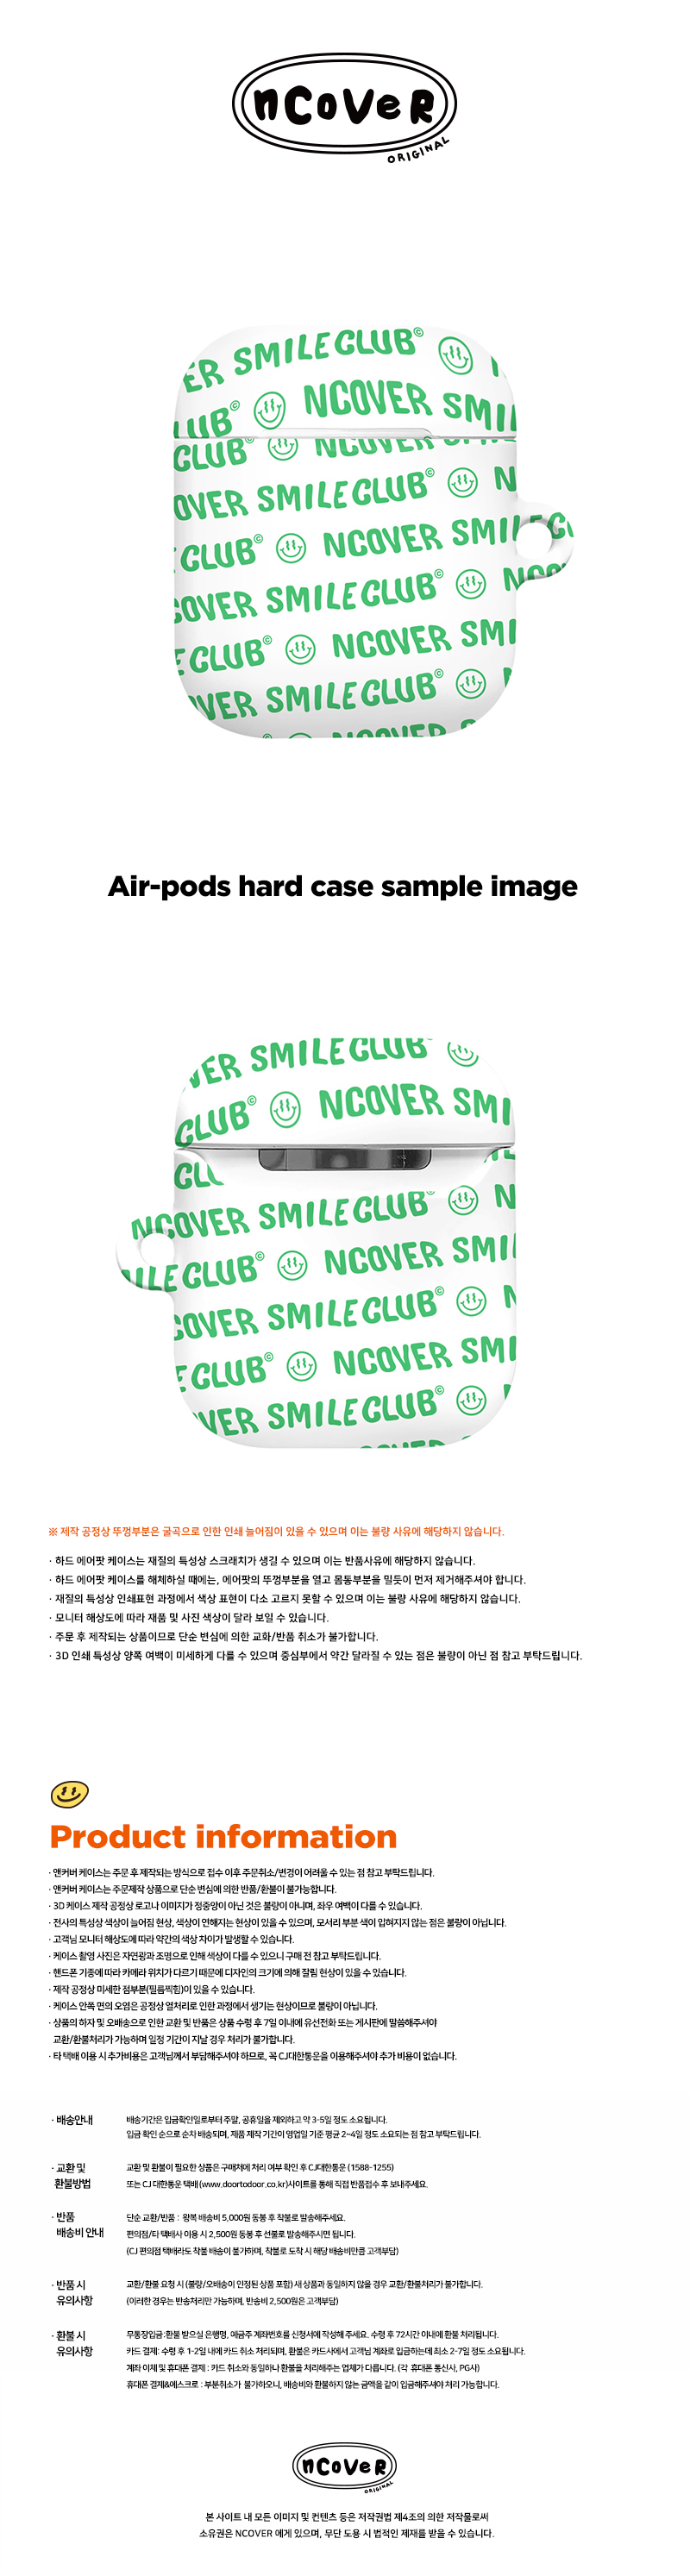 [호환용] Smile club(emoticon)-white.green(airpods hard)  18,000원 - 바이인터내셔널주식회사 디지털, 이어폰/헤드폰, 이어폰/헤드폰 액세서리, 에어팟/에어팟프로 케이스 바보사랑 [호환용] Smile club(emoticon)-white.green(airpods hard)  18,000원 - 바이인터내셔널주식회사 디지털, 이어폰/헤드폰, 이어폰/헤드폰 액세서리, 에어팟/에어팟프로 케이스 바보사랑